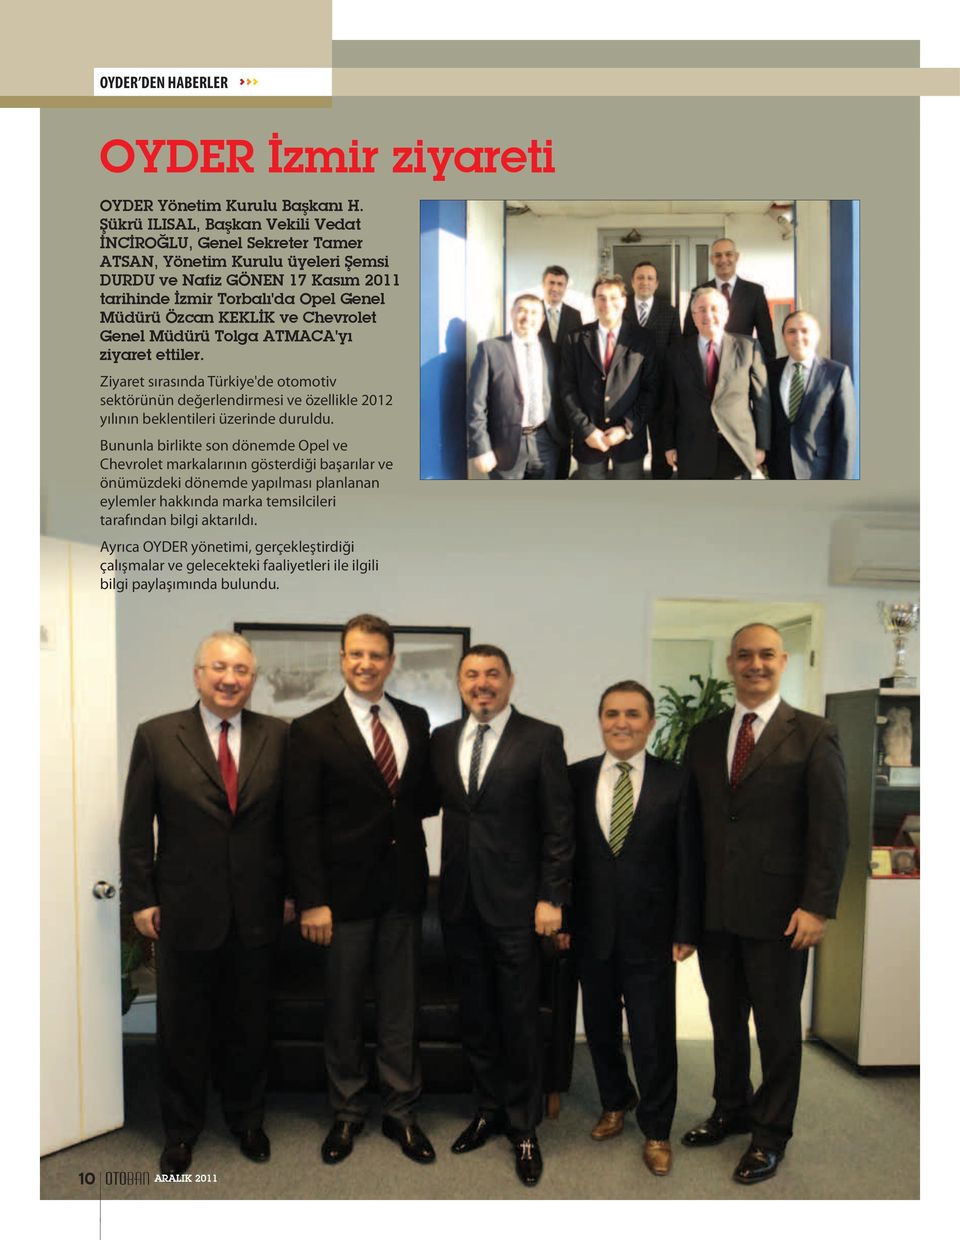 KEKLİK ve Chevrolet Genel Müdürü Tolga ATMACA'yı ziyaret ettiler. Ziyaret sırasında Türkiye'de otomotiv sektörünün değerlendirmesi ve özellikle 2012 yılının beklentileri üzerinde duruldu.